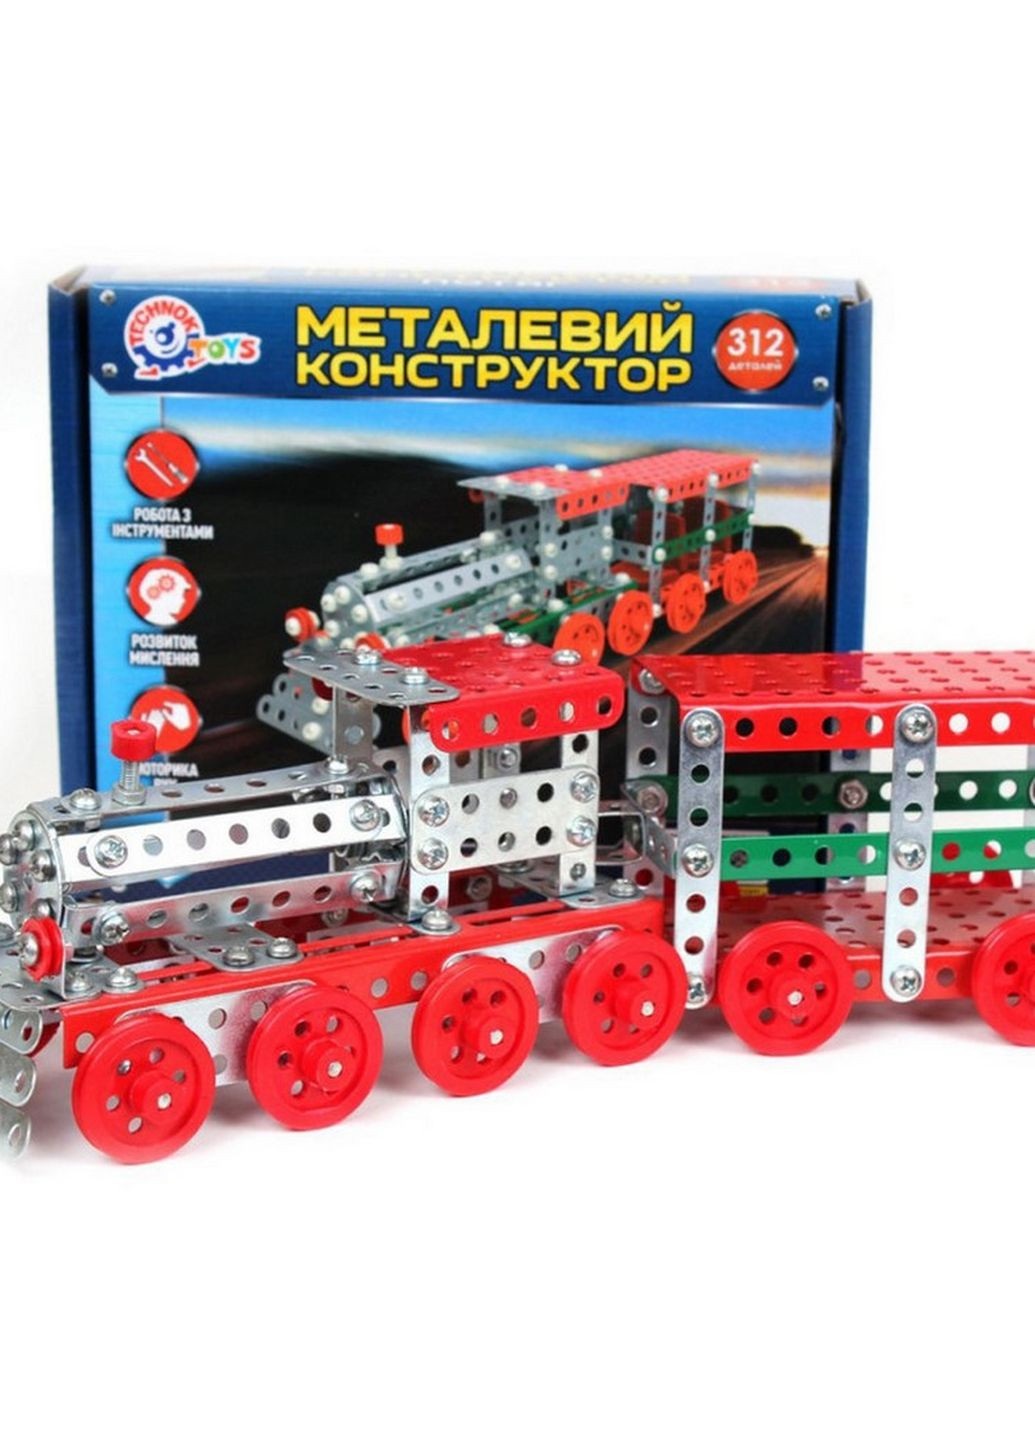 Металевий конструктор Потяг 4814TXK, 312 деталей ТехноК (276390824)